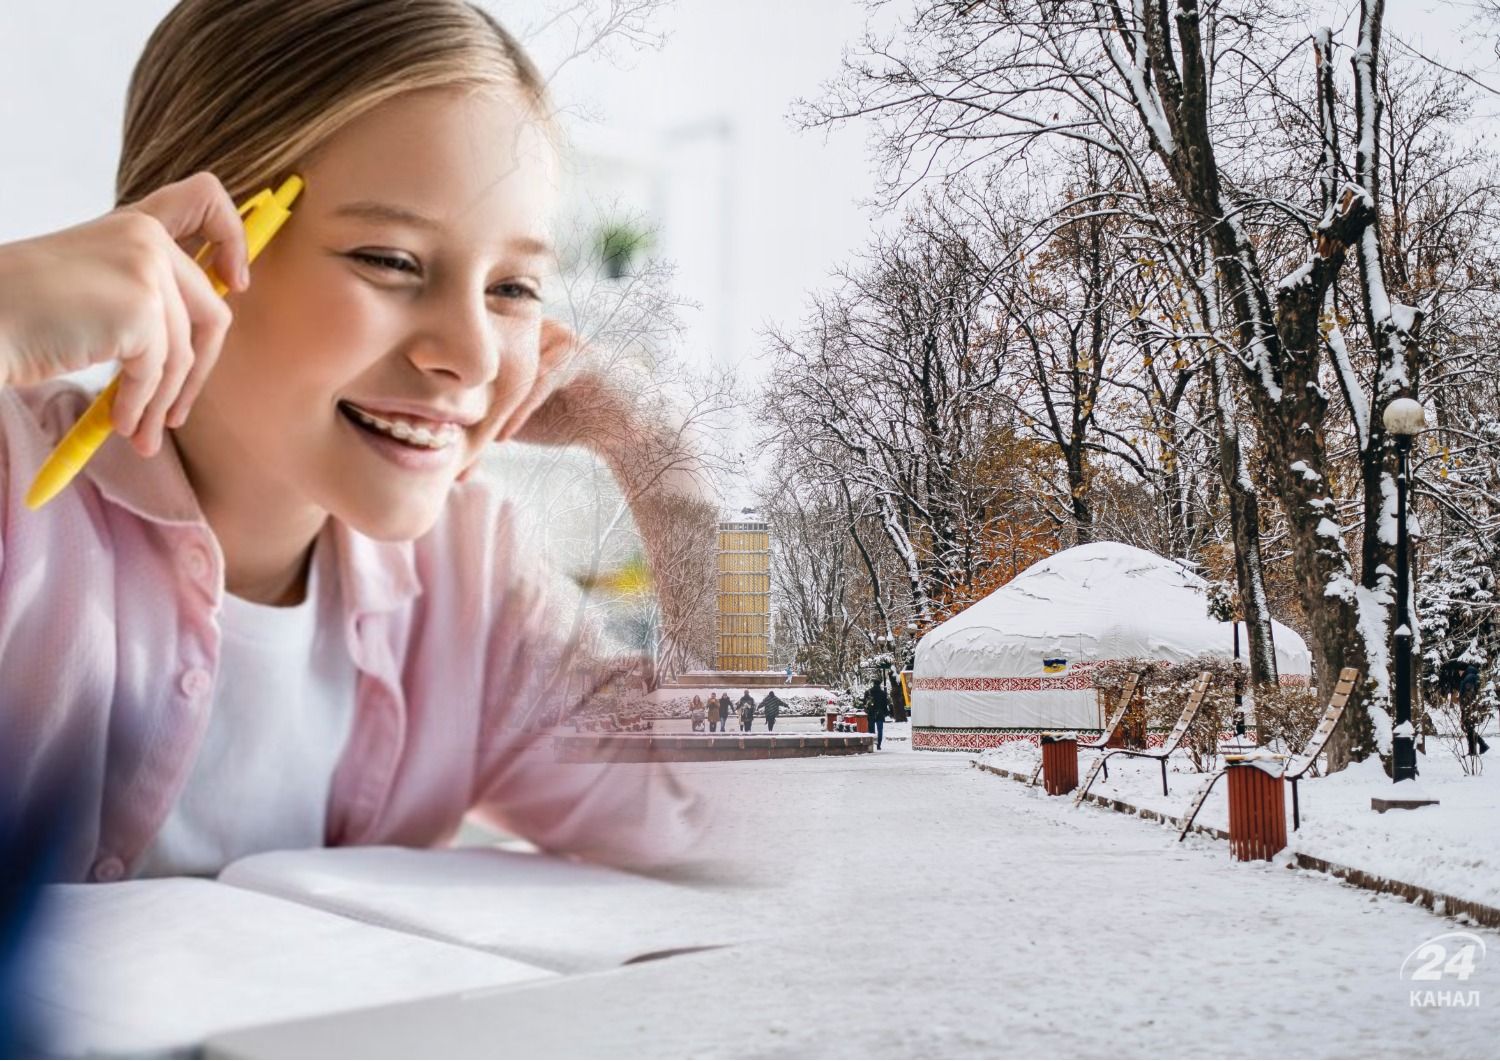 Обучение в школах 27 ноября - в каких регионах непогода в Украине ввела дистанционку